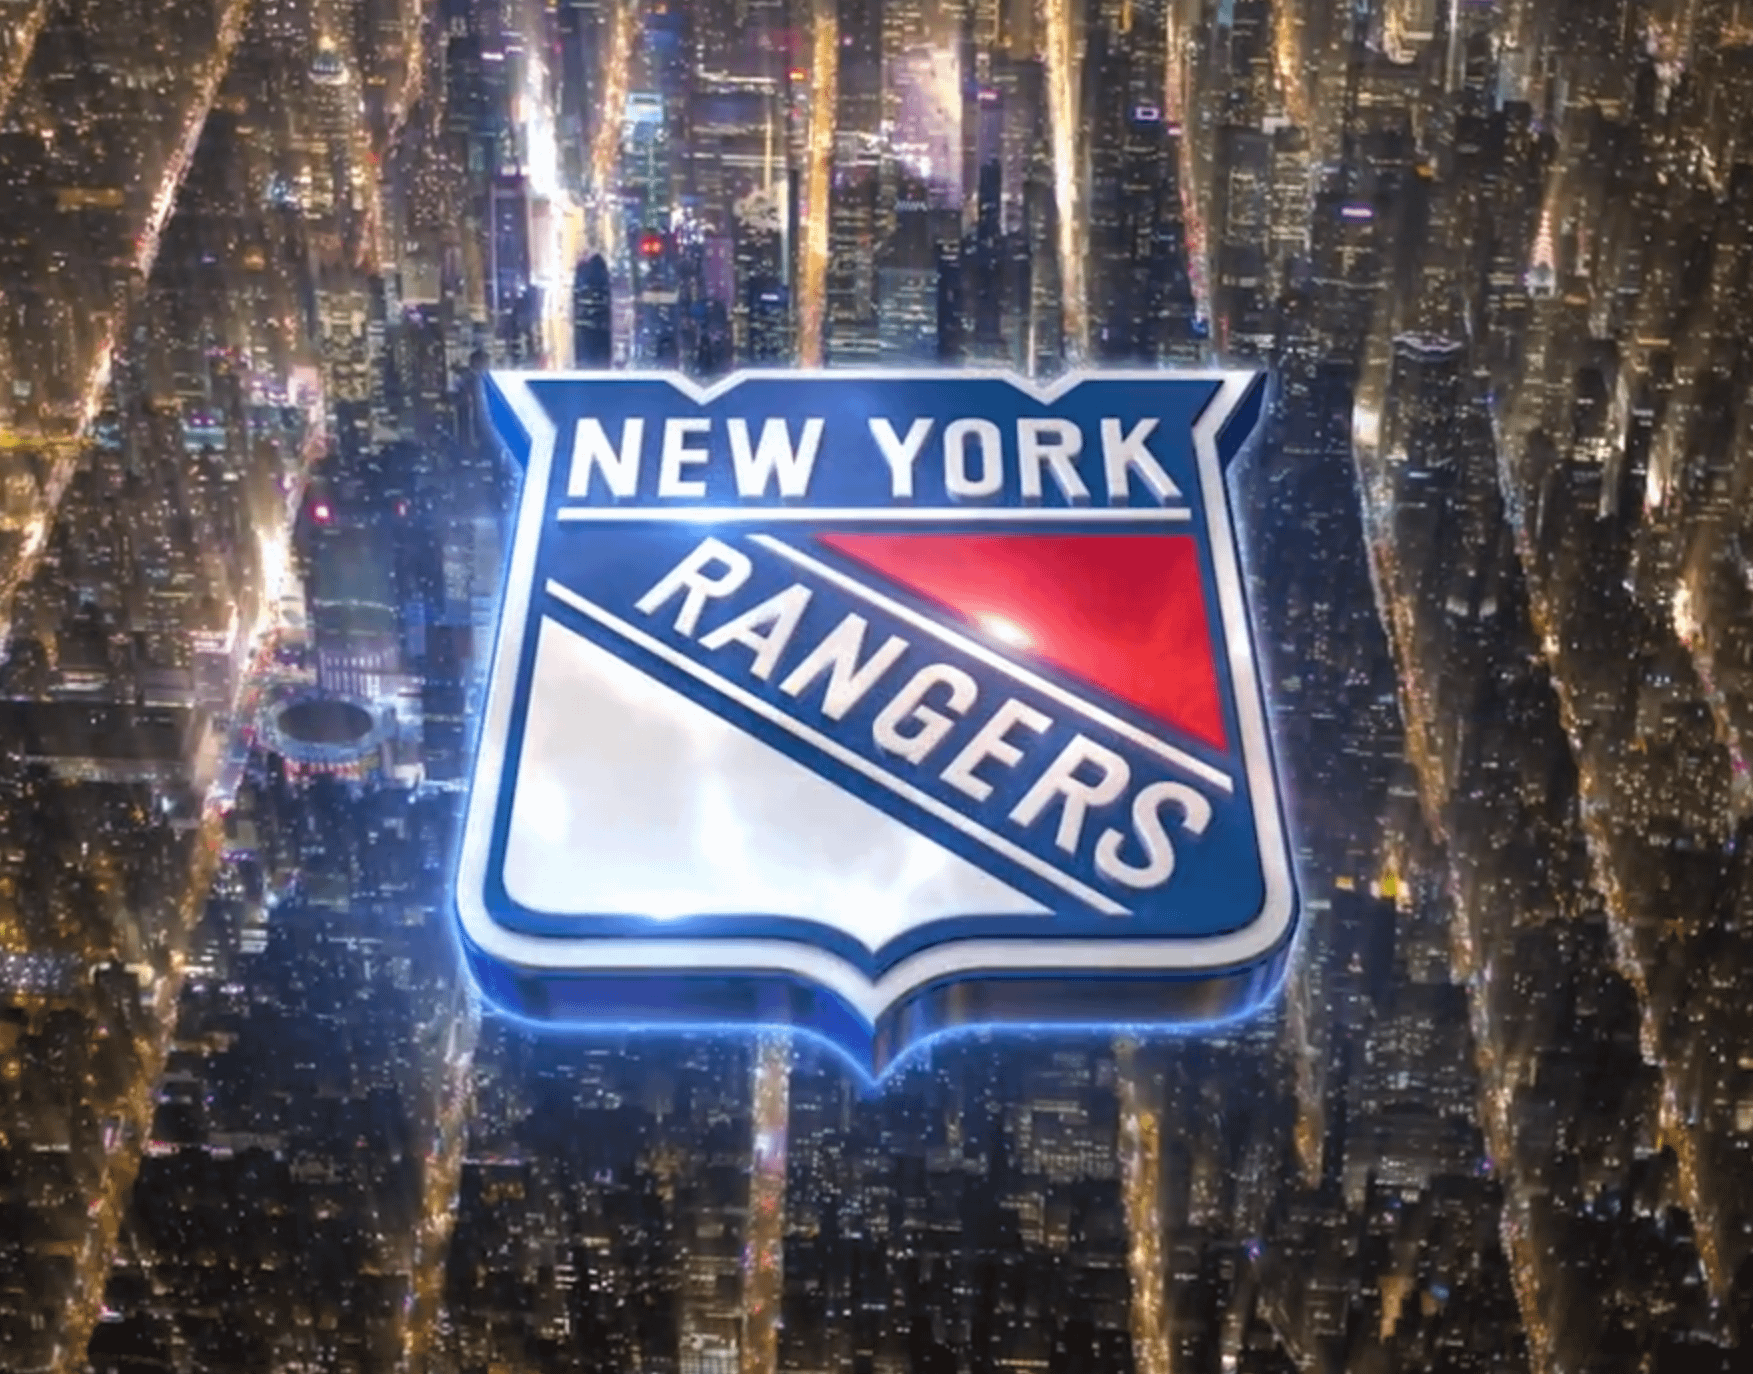 New York Rangers (NHL): Open.